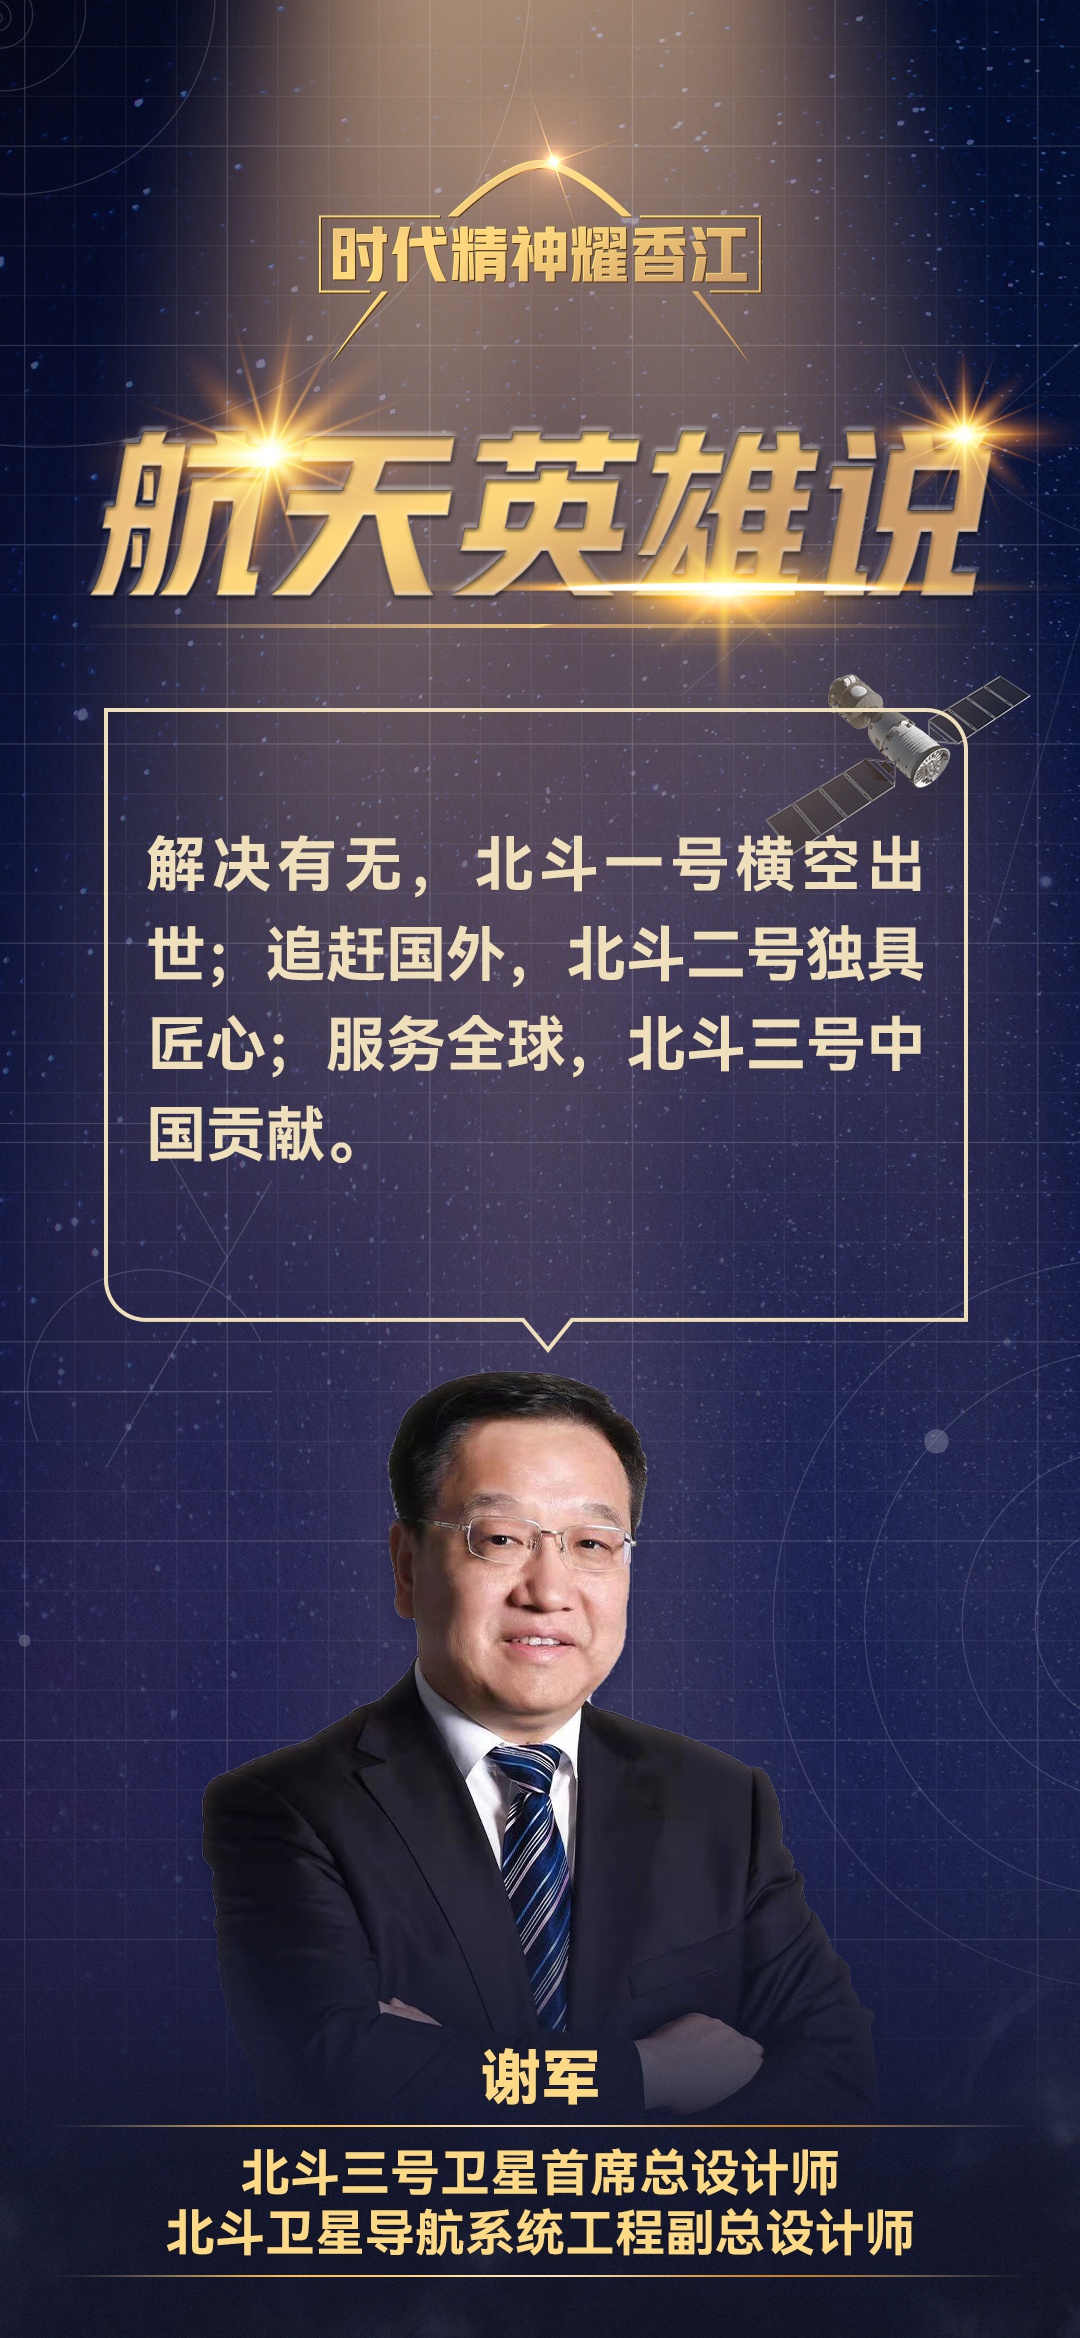 系统工程副总设计师谢军香港校园演讲金句